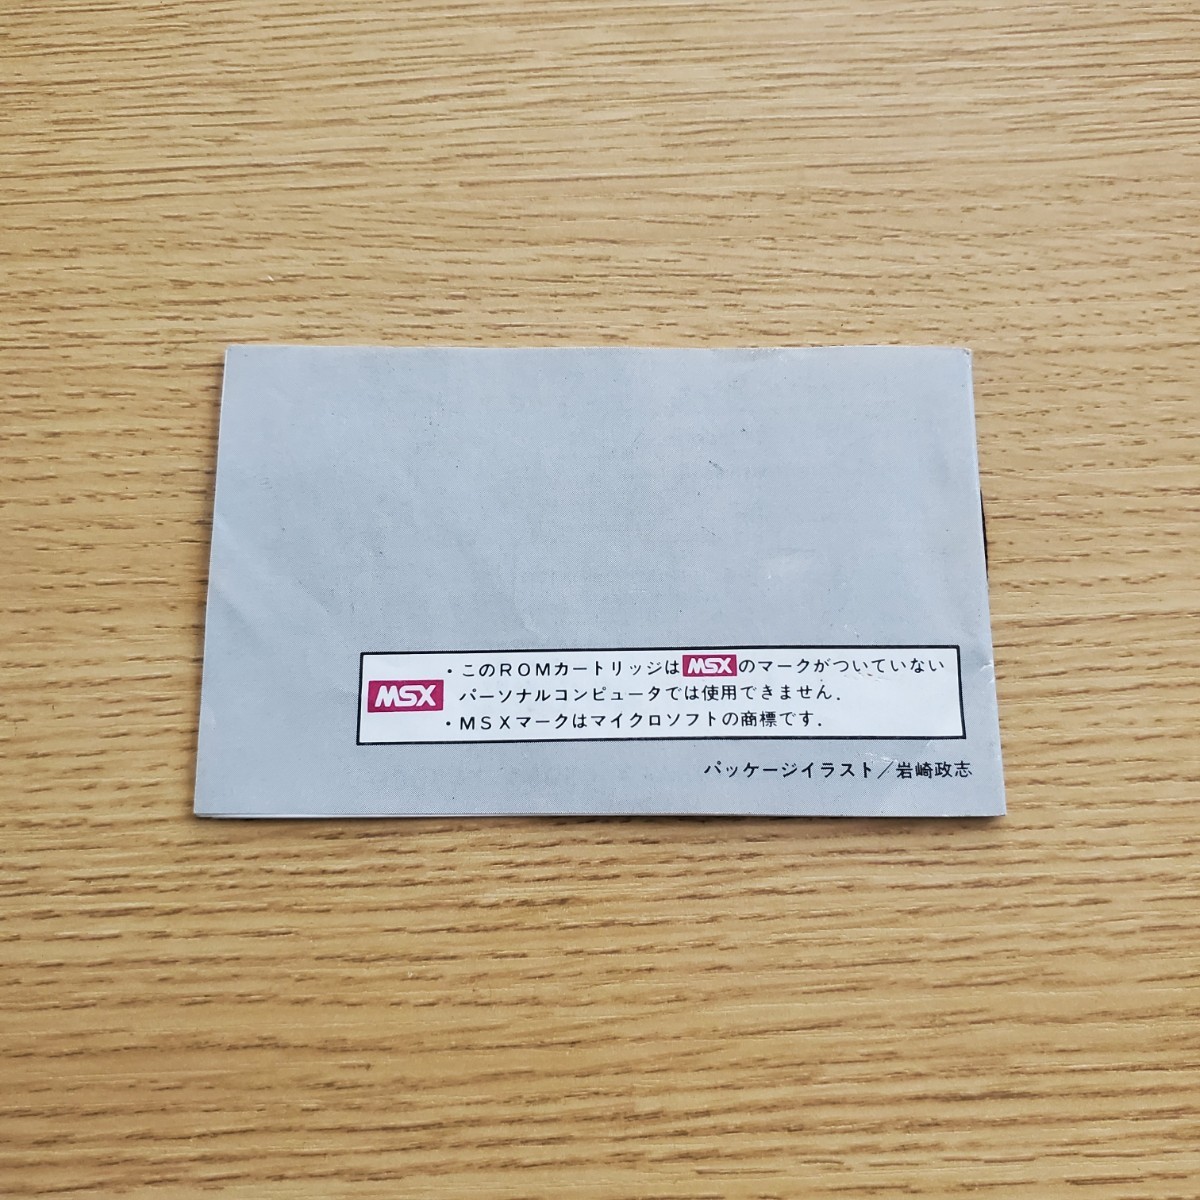 MSXf риппер тапочки - коробка мнение стоимость доставки 230 иен ~ очень редкий коллекция 